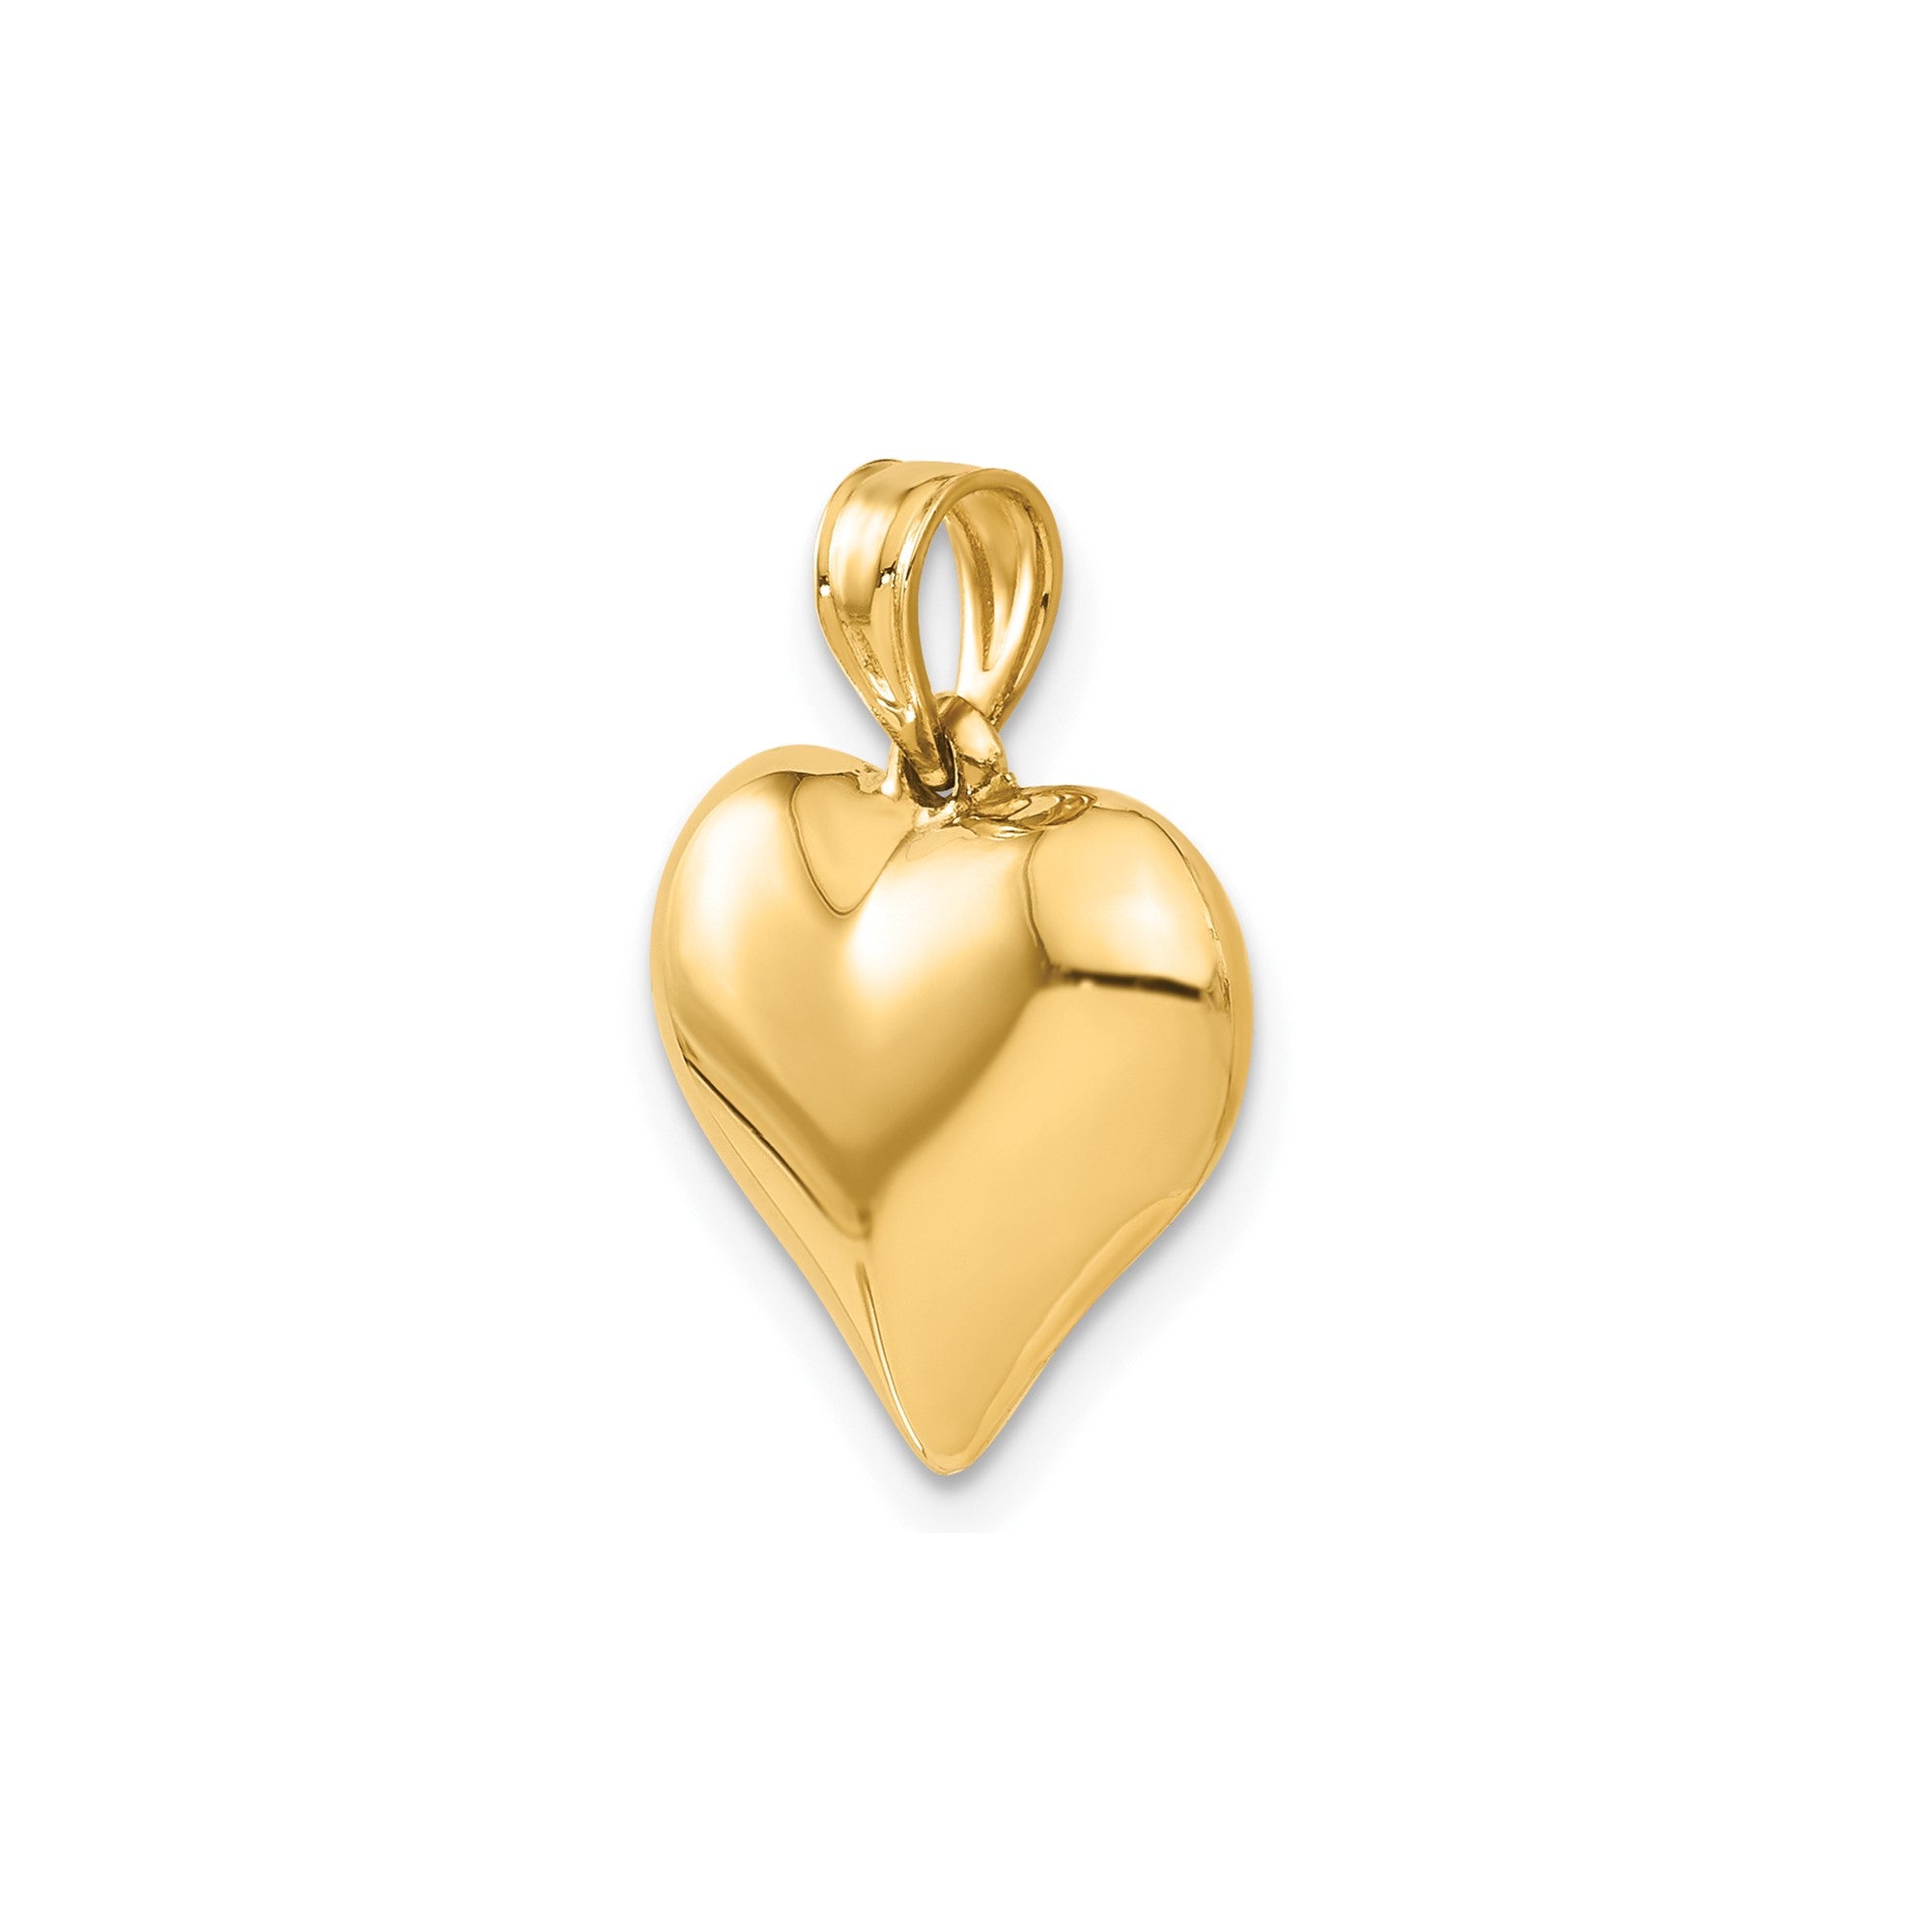 Colgante de corazón inflado en 3D pulido de oro amarillo de 14 quilates, joyería fina de diseño para hombres y mujeres